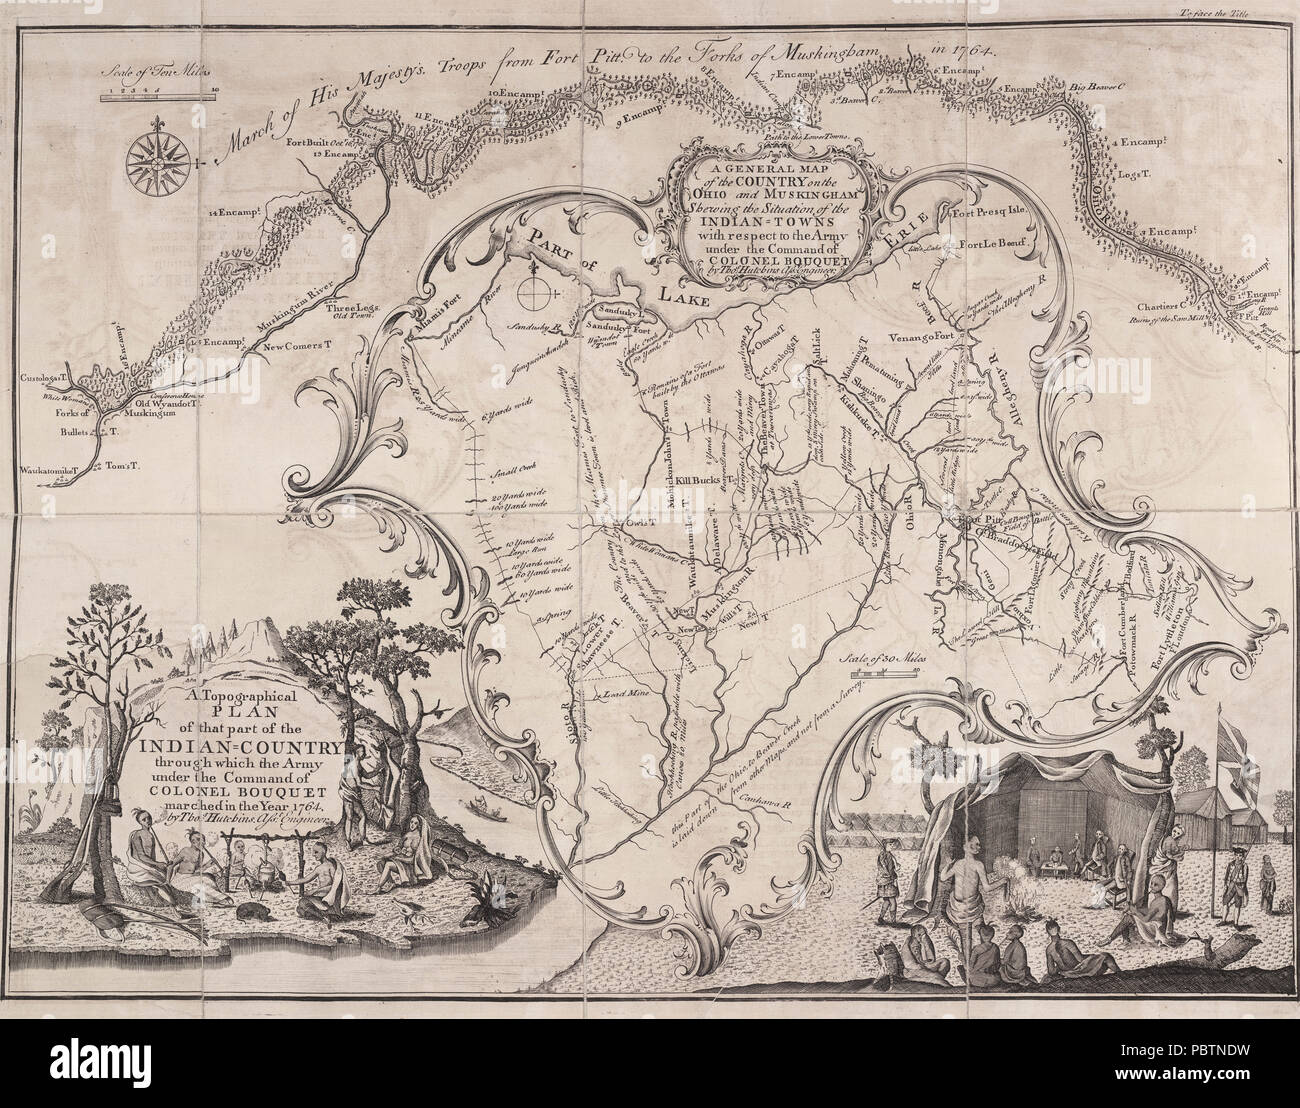 Un plan topographique de la partie de l'Indien Pays par lequel armée sous le commandement du colonel Bouquet ont marché dans l'année 1764 par Thomas Hutchins. - Ingénieur adjoint de l'armée britannique site 1764 Banque D'Images